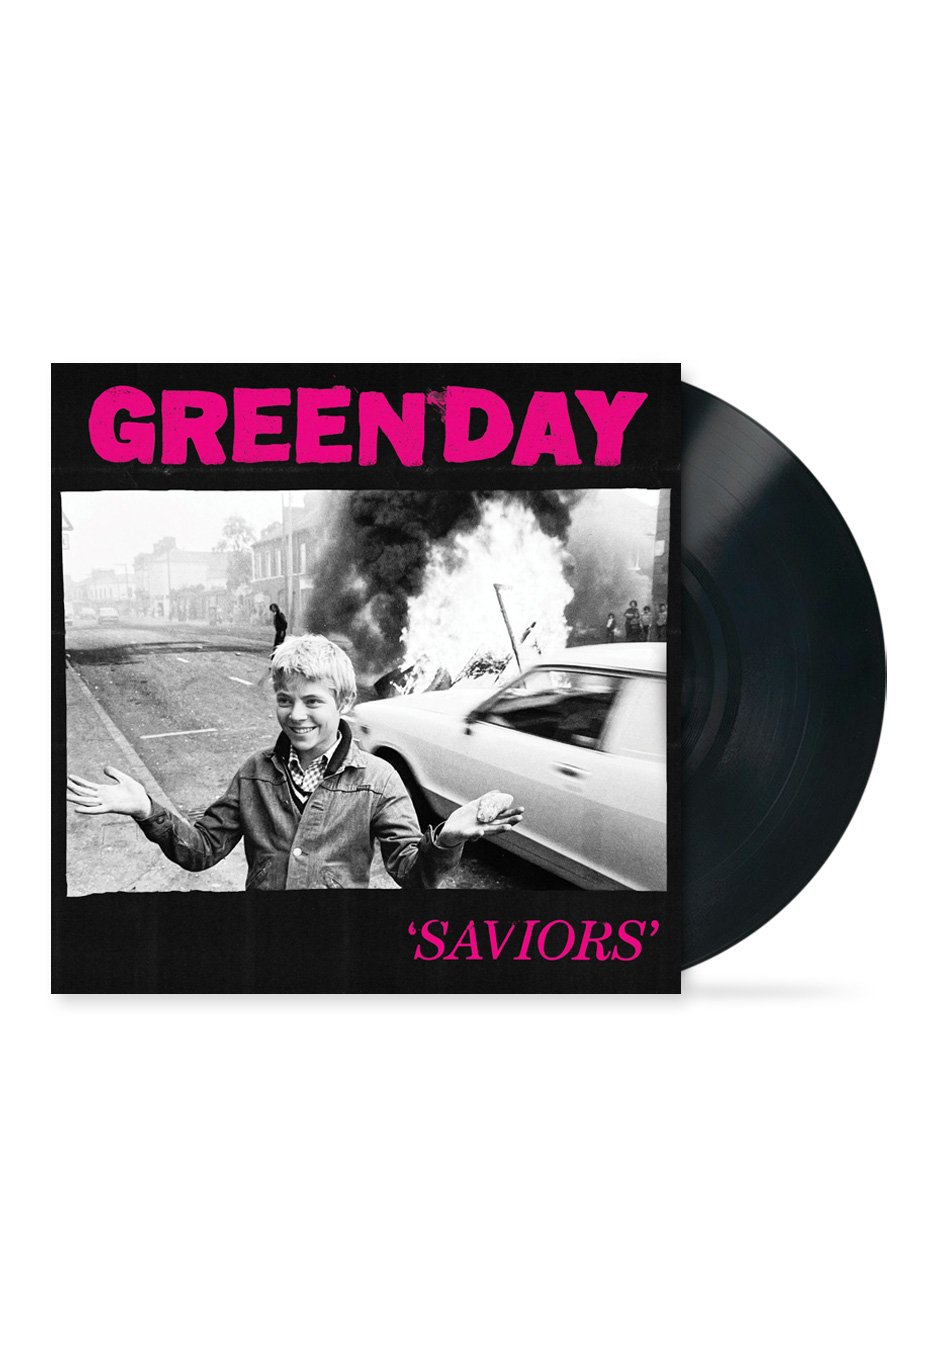 Green Day - Saviors (Deluxe) - Vinyl